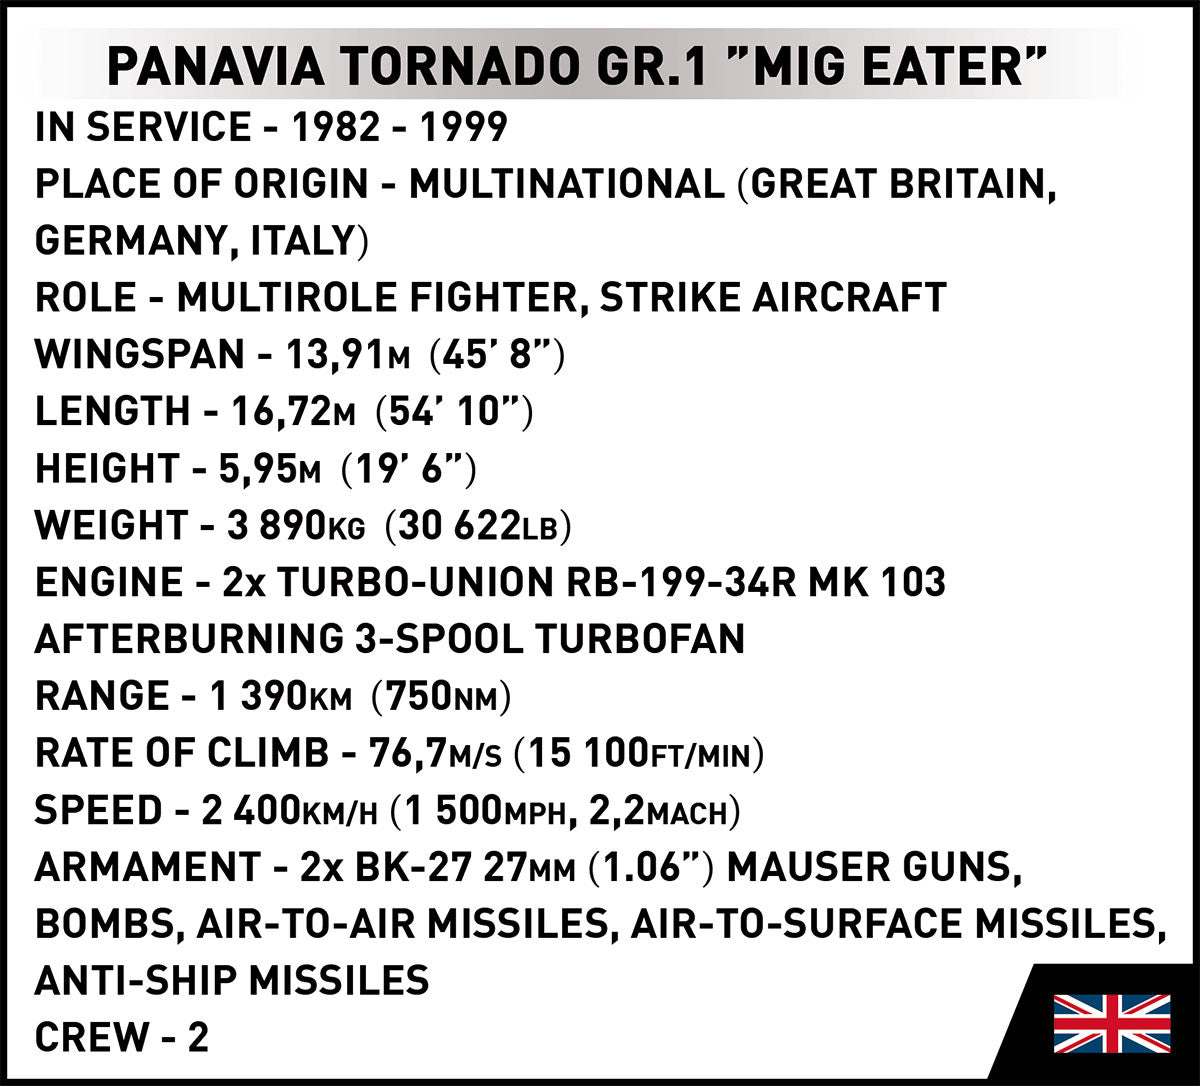 COBI Armed Forces Panavia Tornado GR.1 "Mig Eater" Aircraft